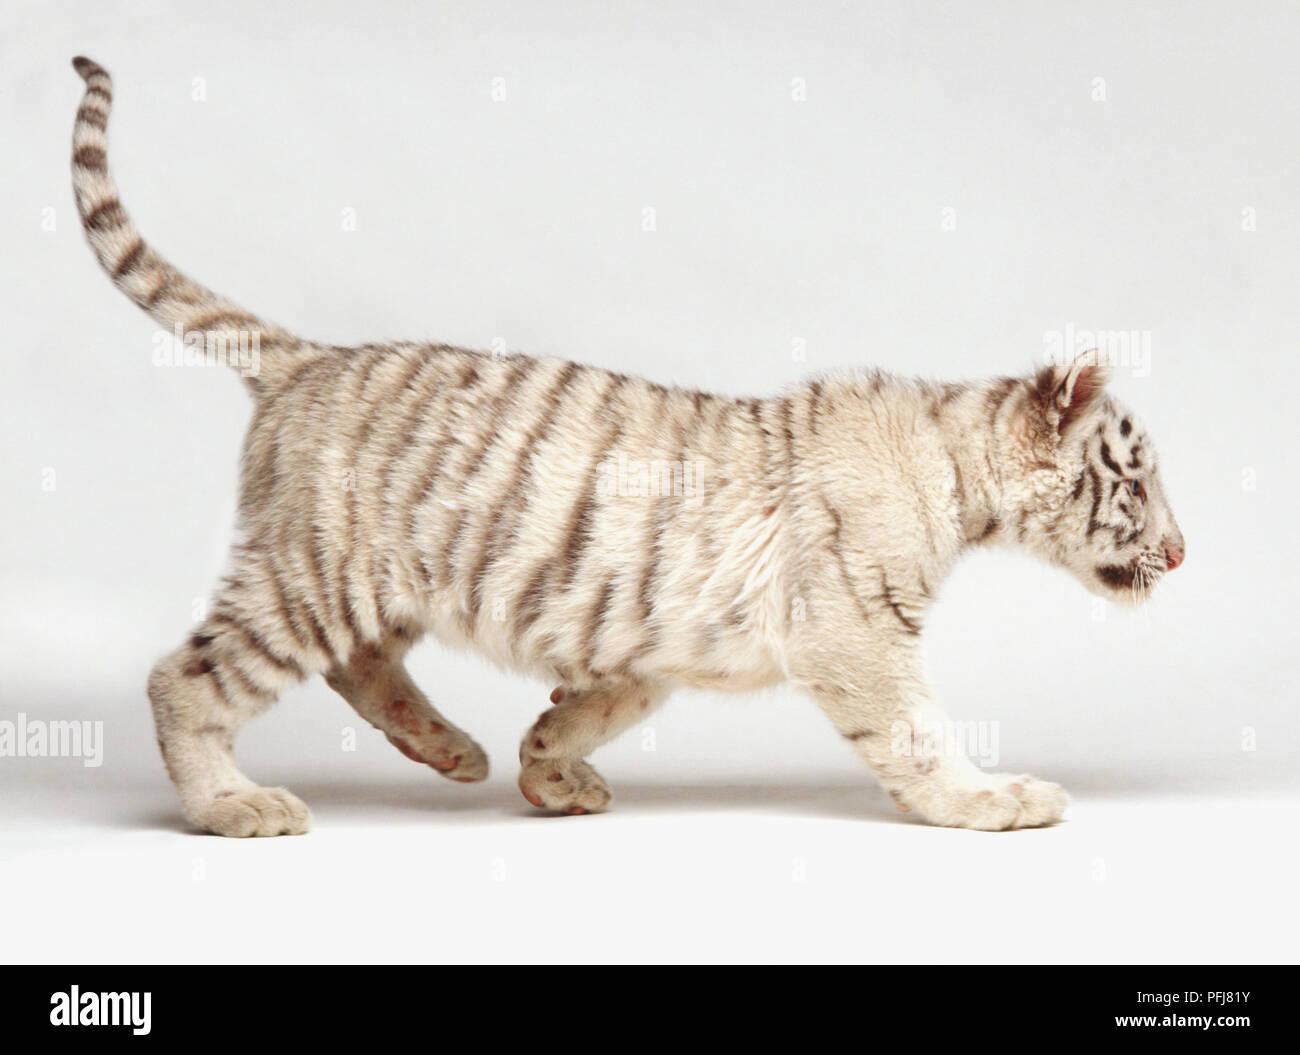 White tiger cub (Panthera tigris) walking, white fur and dark stripes, side view Stock Photo